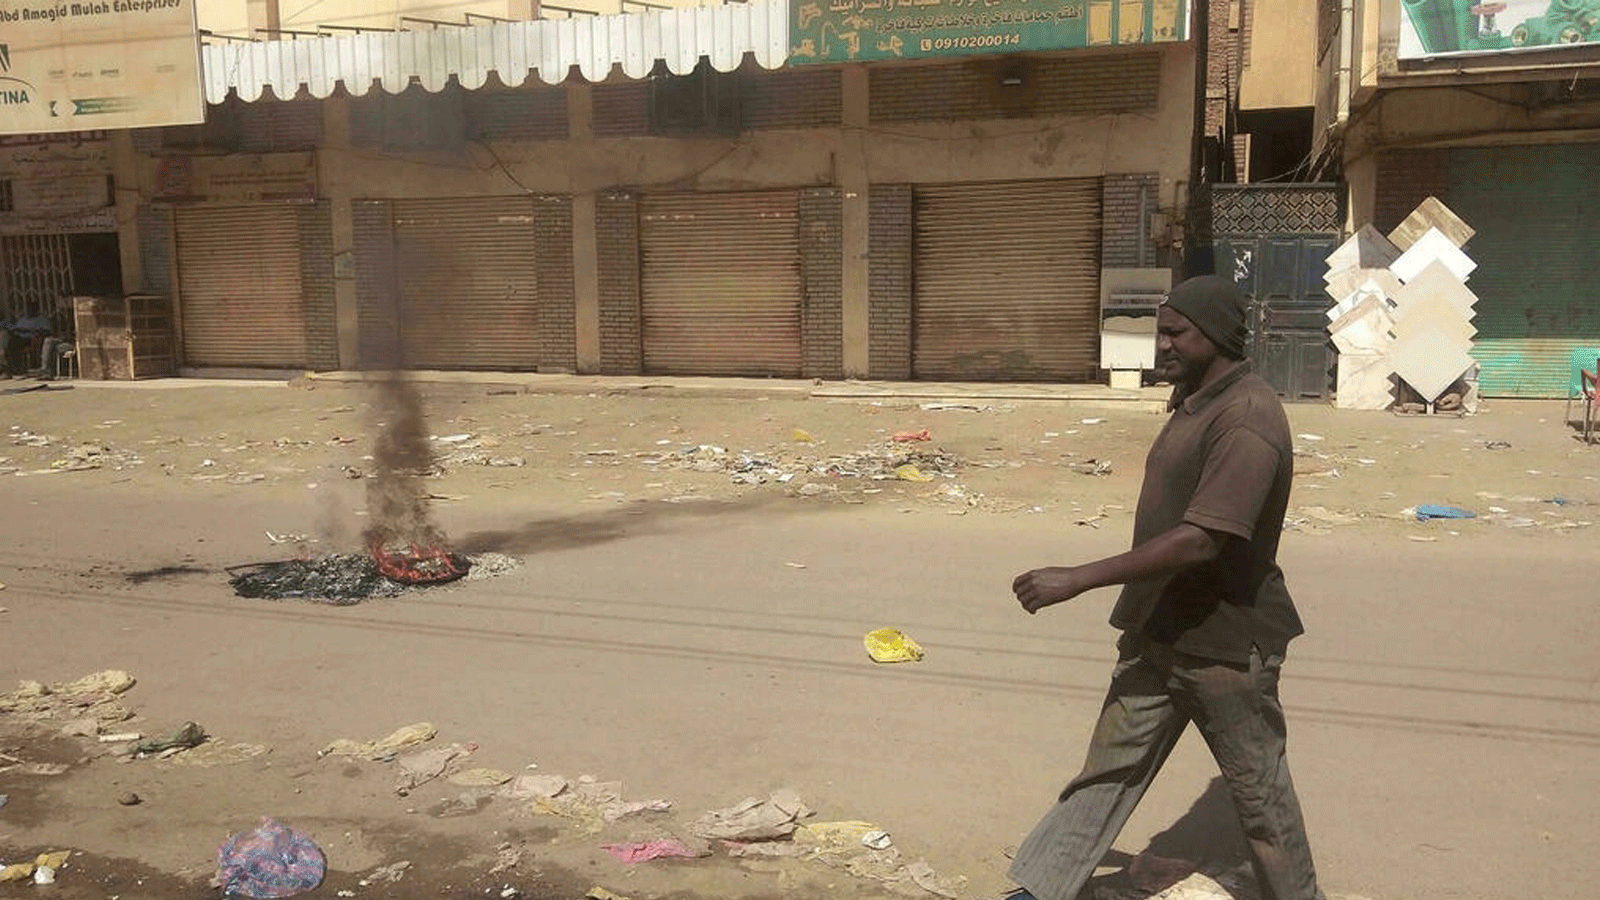 المتاجر مغلقة في سوق ساجان بالخرطوم في 18 كانون الثاني/يناير 2022، في سياق حملة عصيان مدني بعد مقتل سبعة متظاهرين مناهضين للانقلاب.